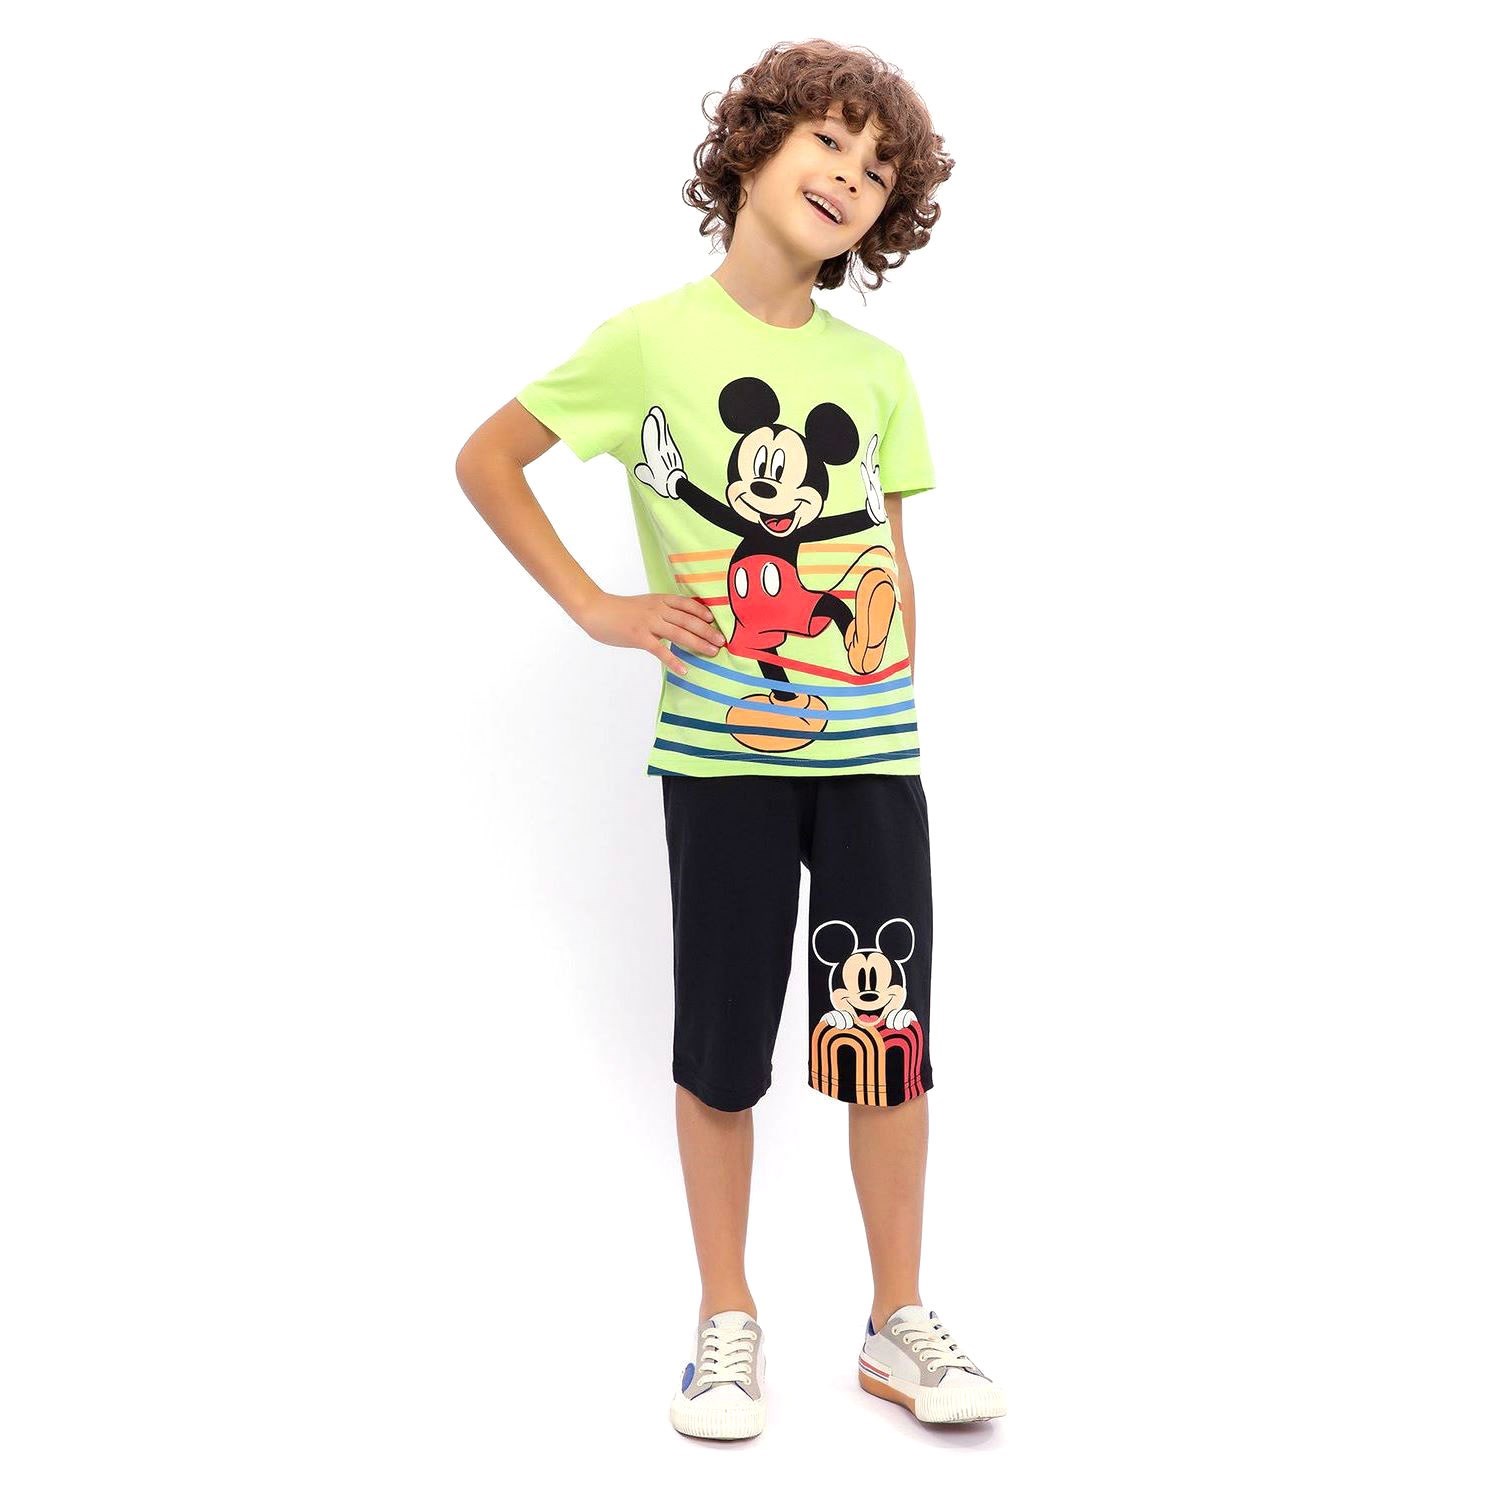 Mickey Mouse Erkek Çocuk Kapri Takımı D4659-3 Lime